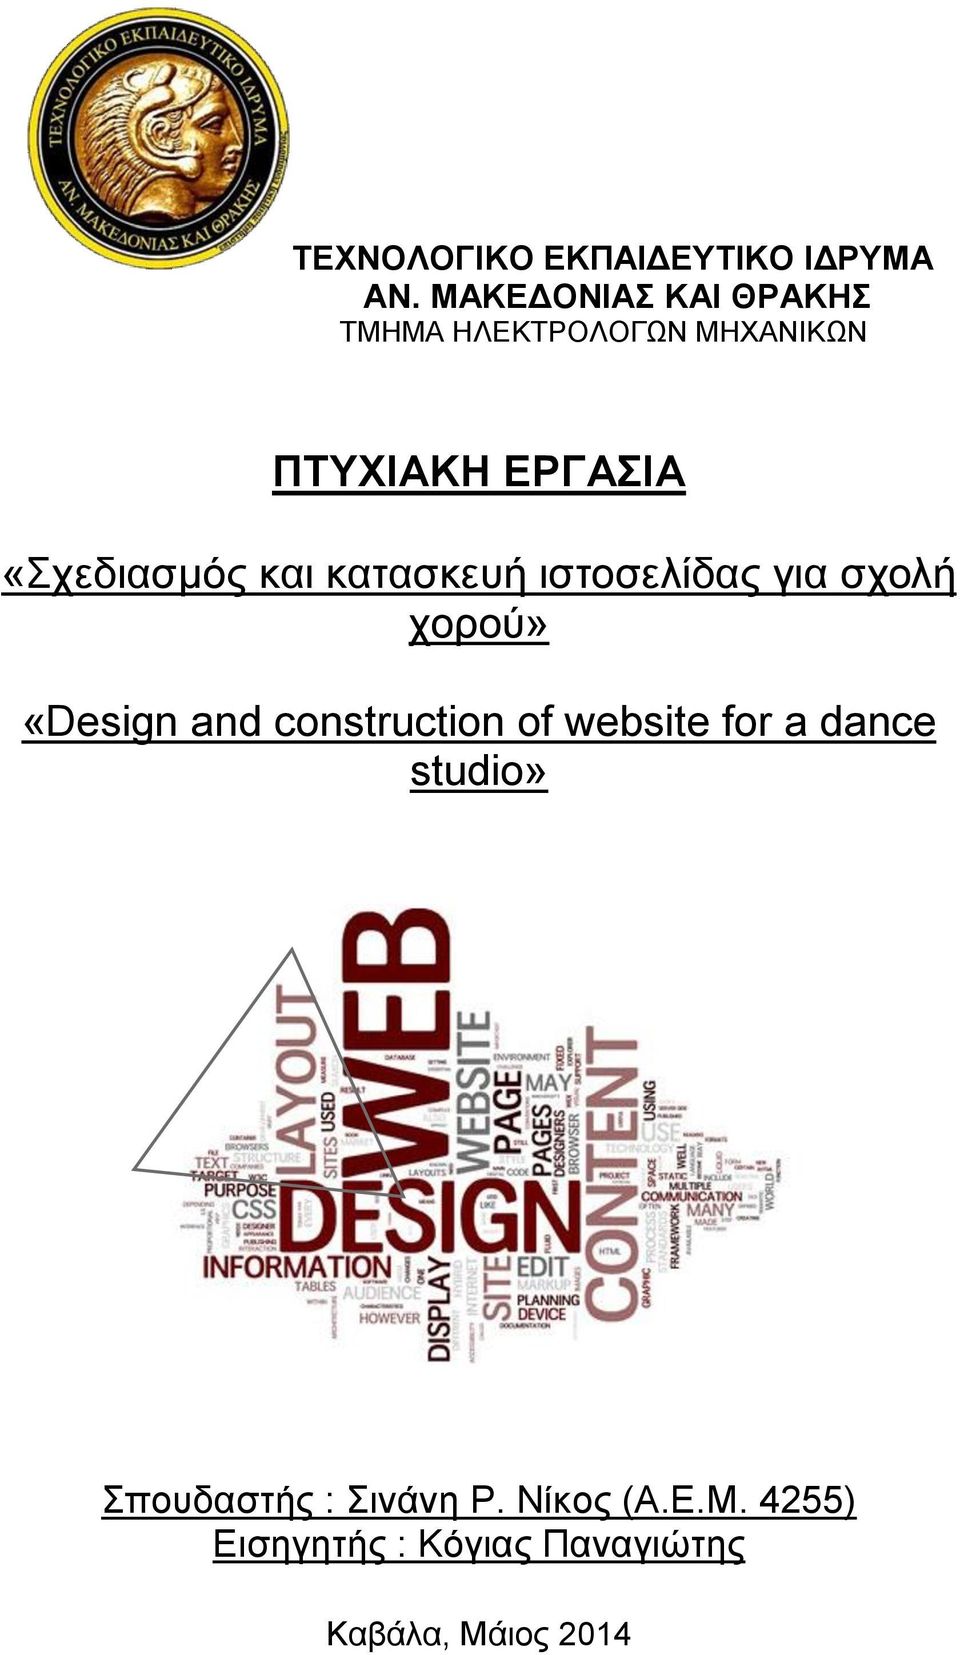 «Σχεδιασμός και κατασκευή ιστοσελίδας για σχολή χορού» «Design and